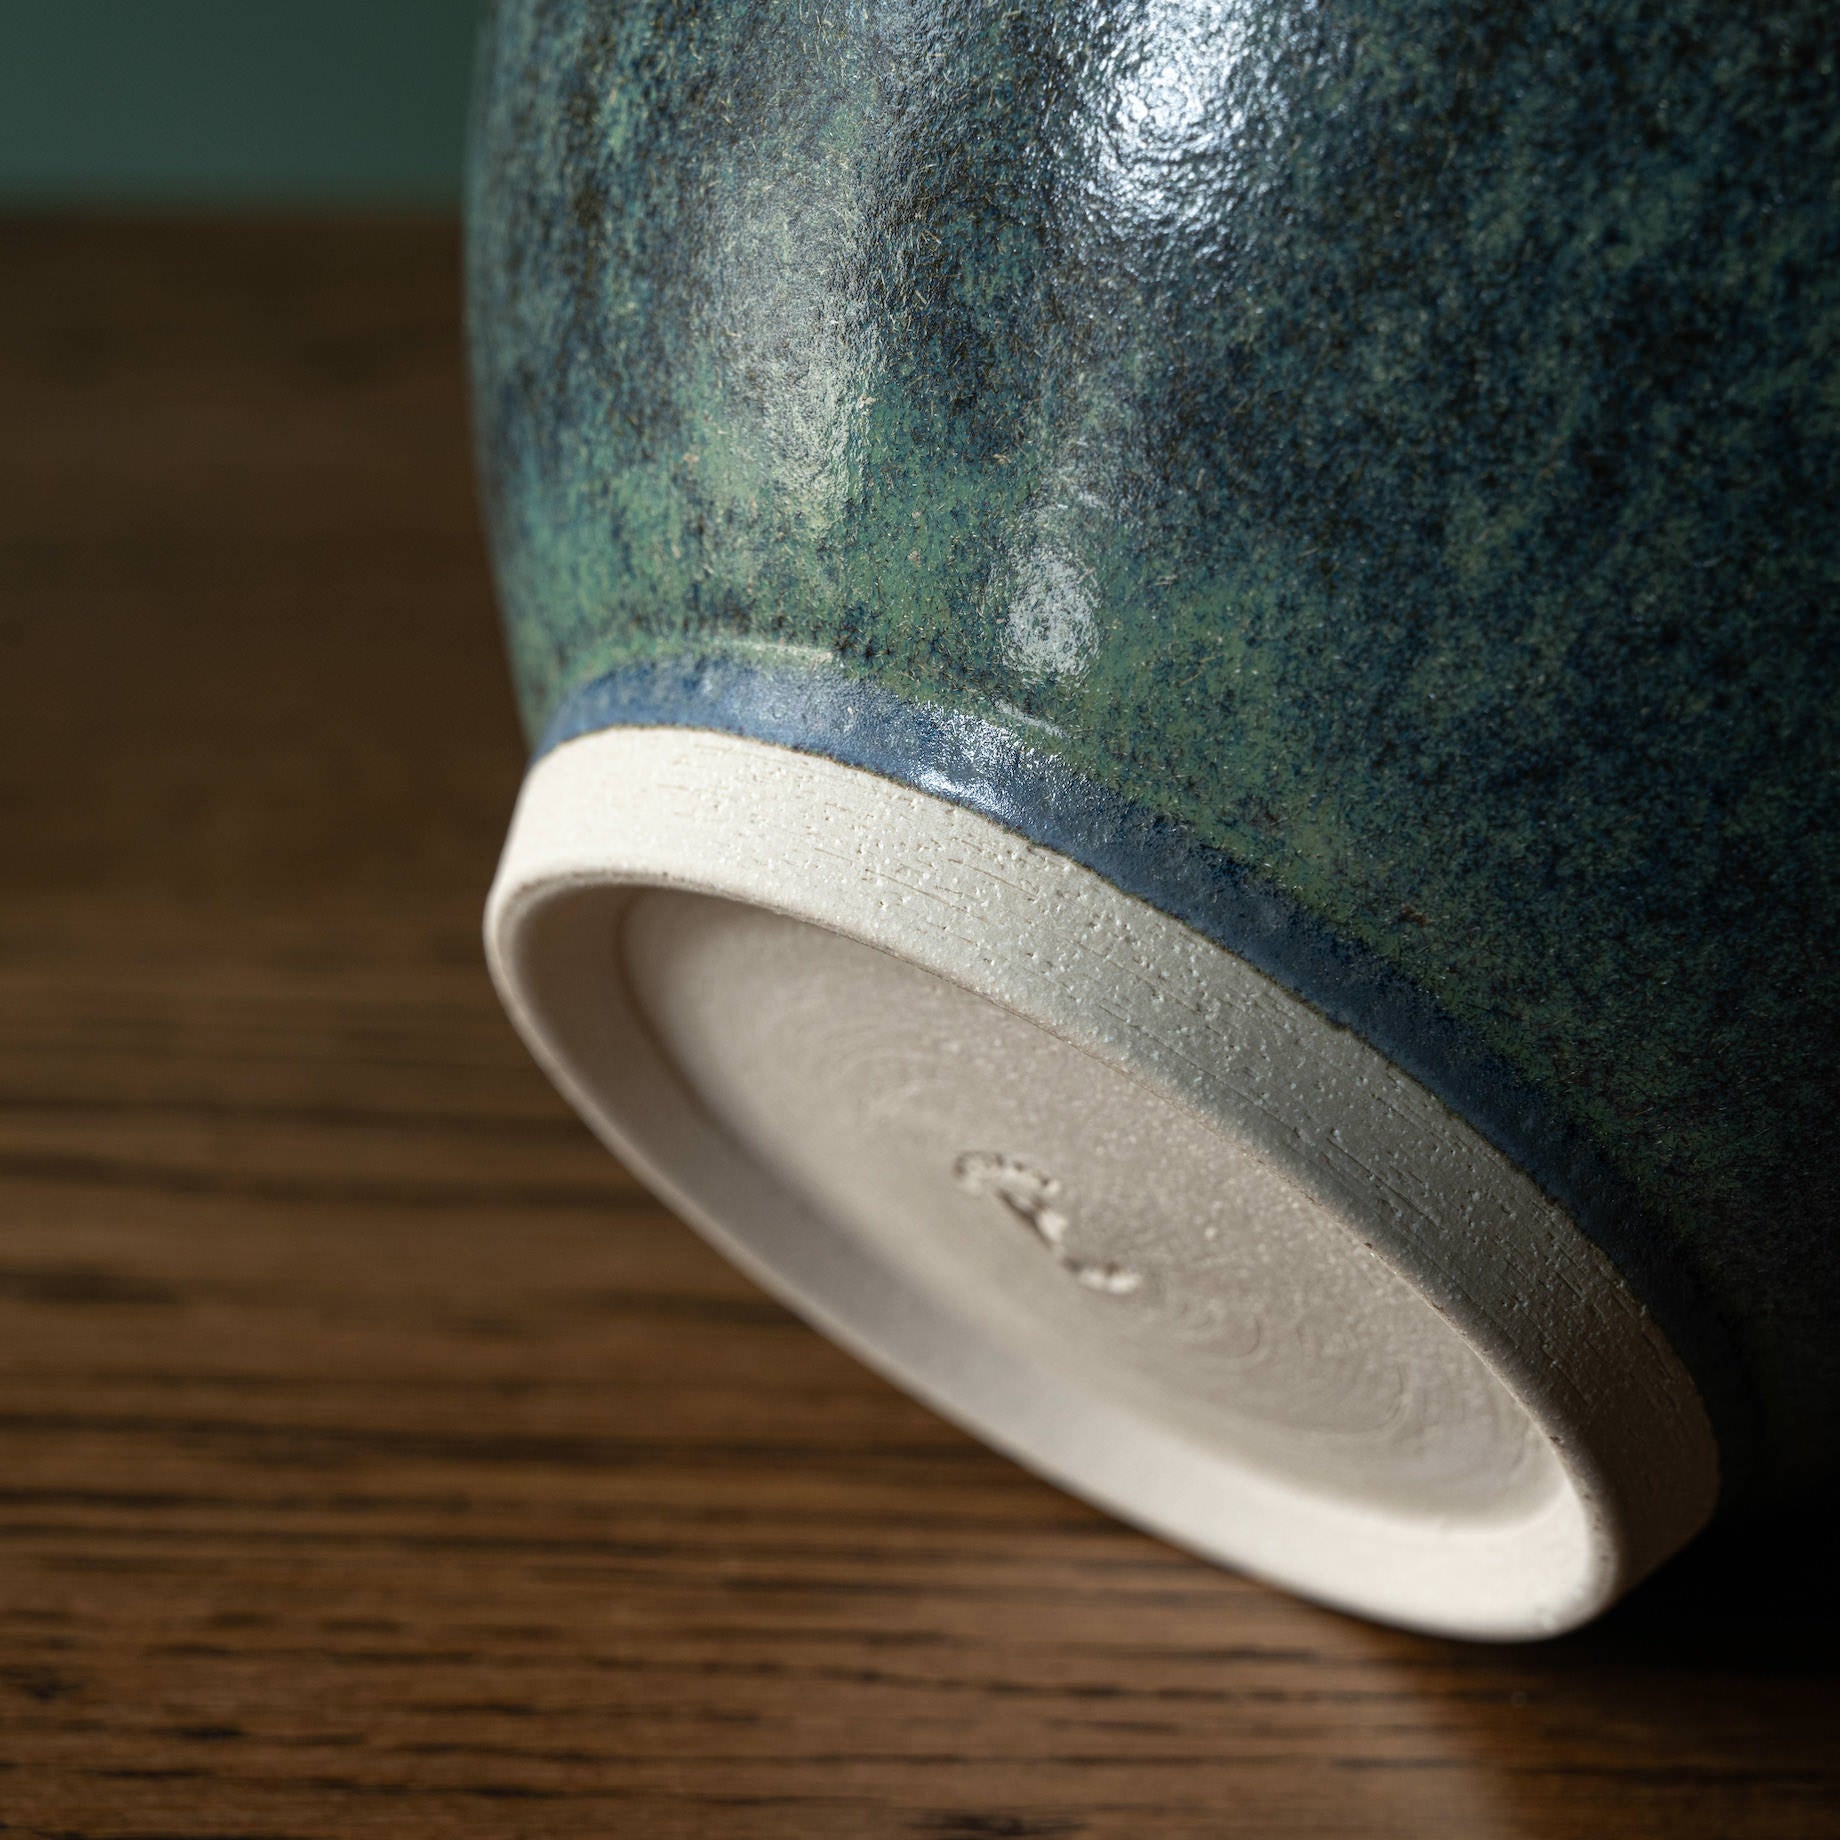 Pottery West Stoneware Rounded Vase base in Nori glaze